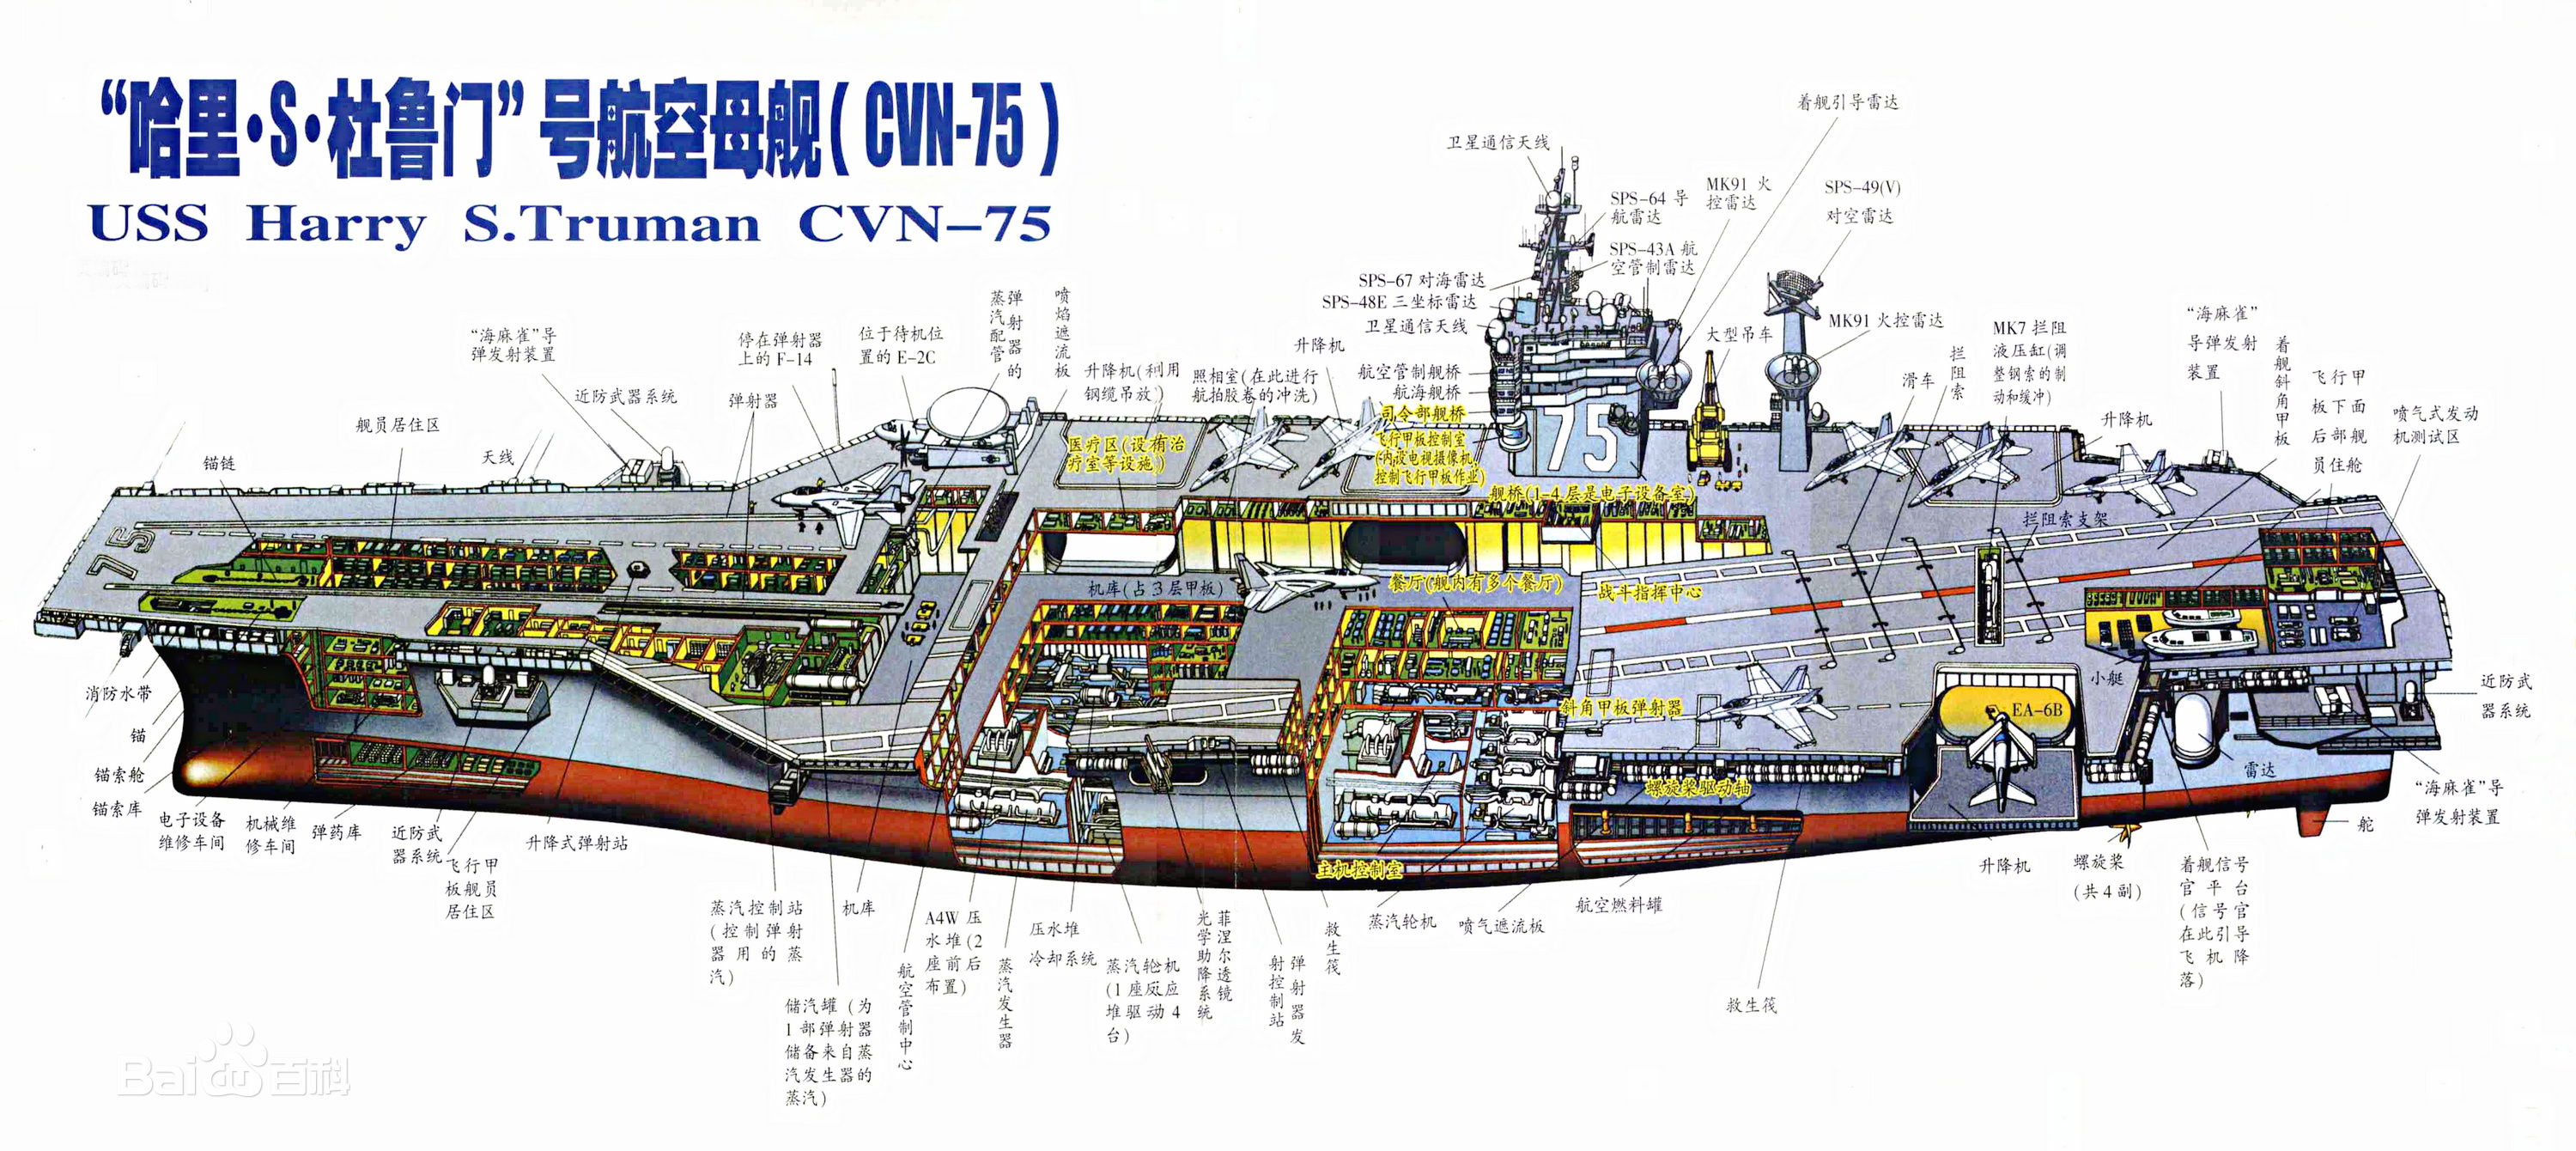 图鉴:尼米兹级航空母舰杜鲁门号舰岛结构与布局